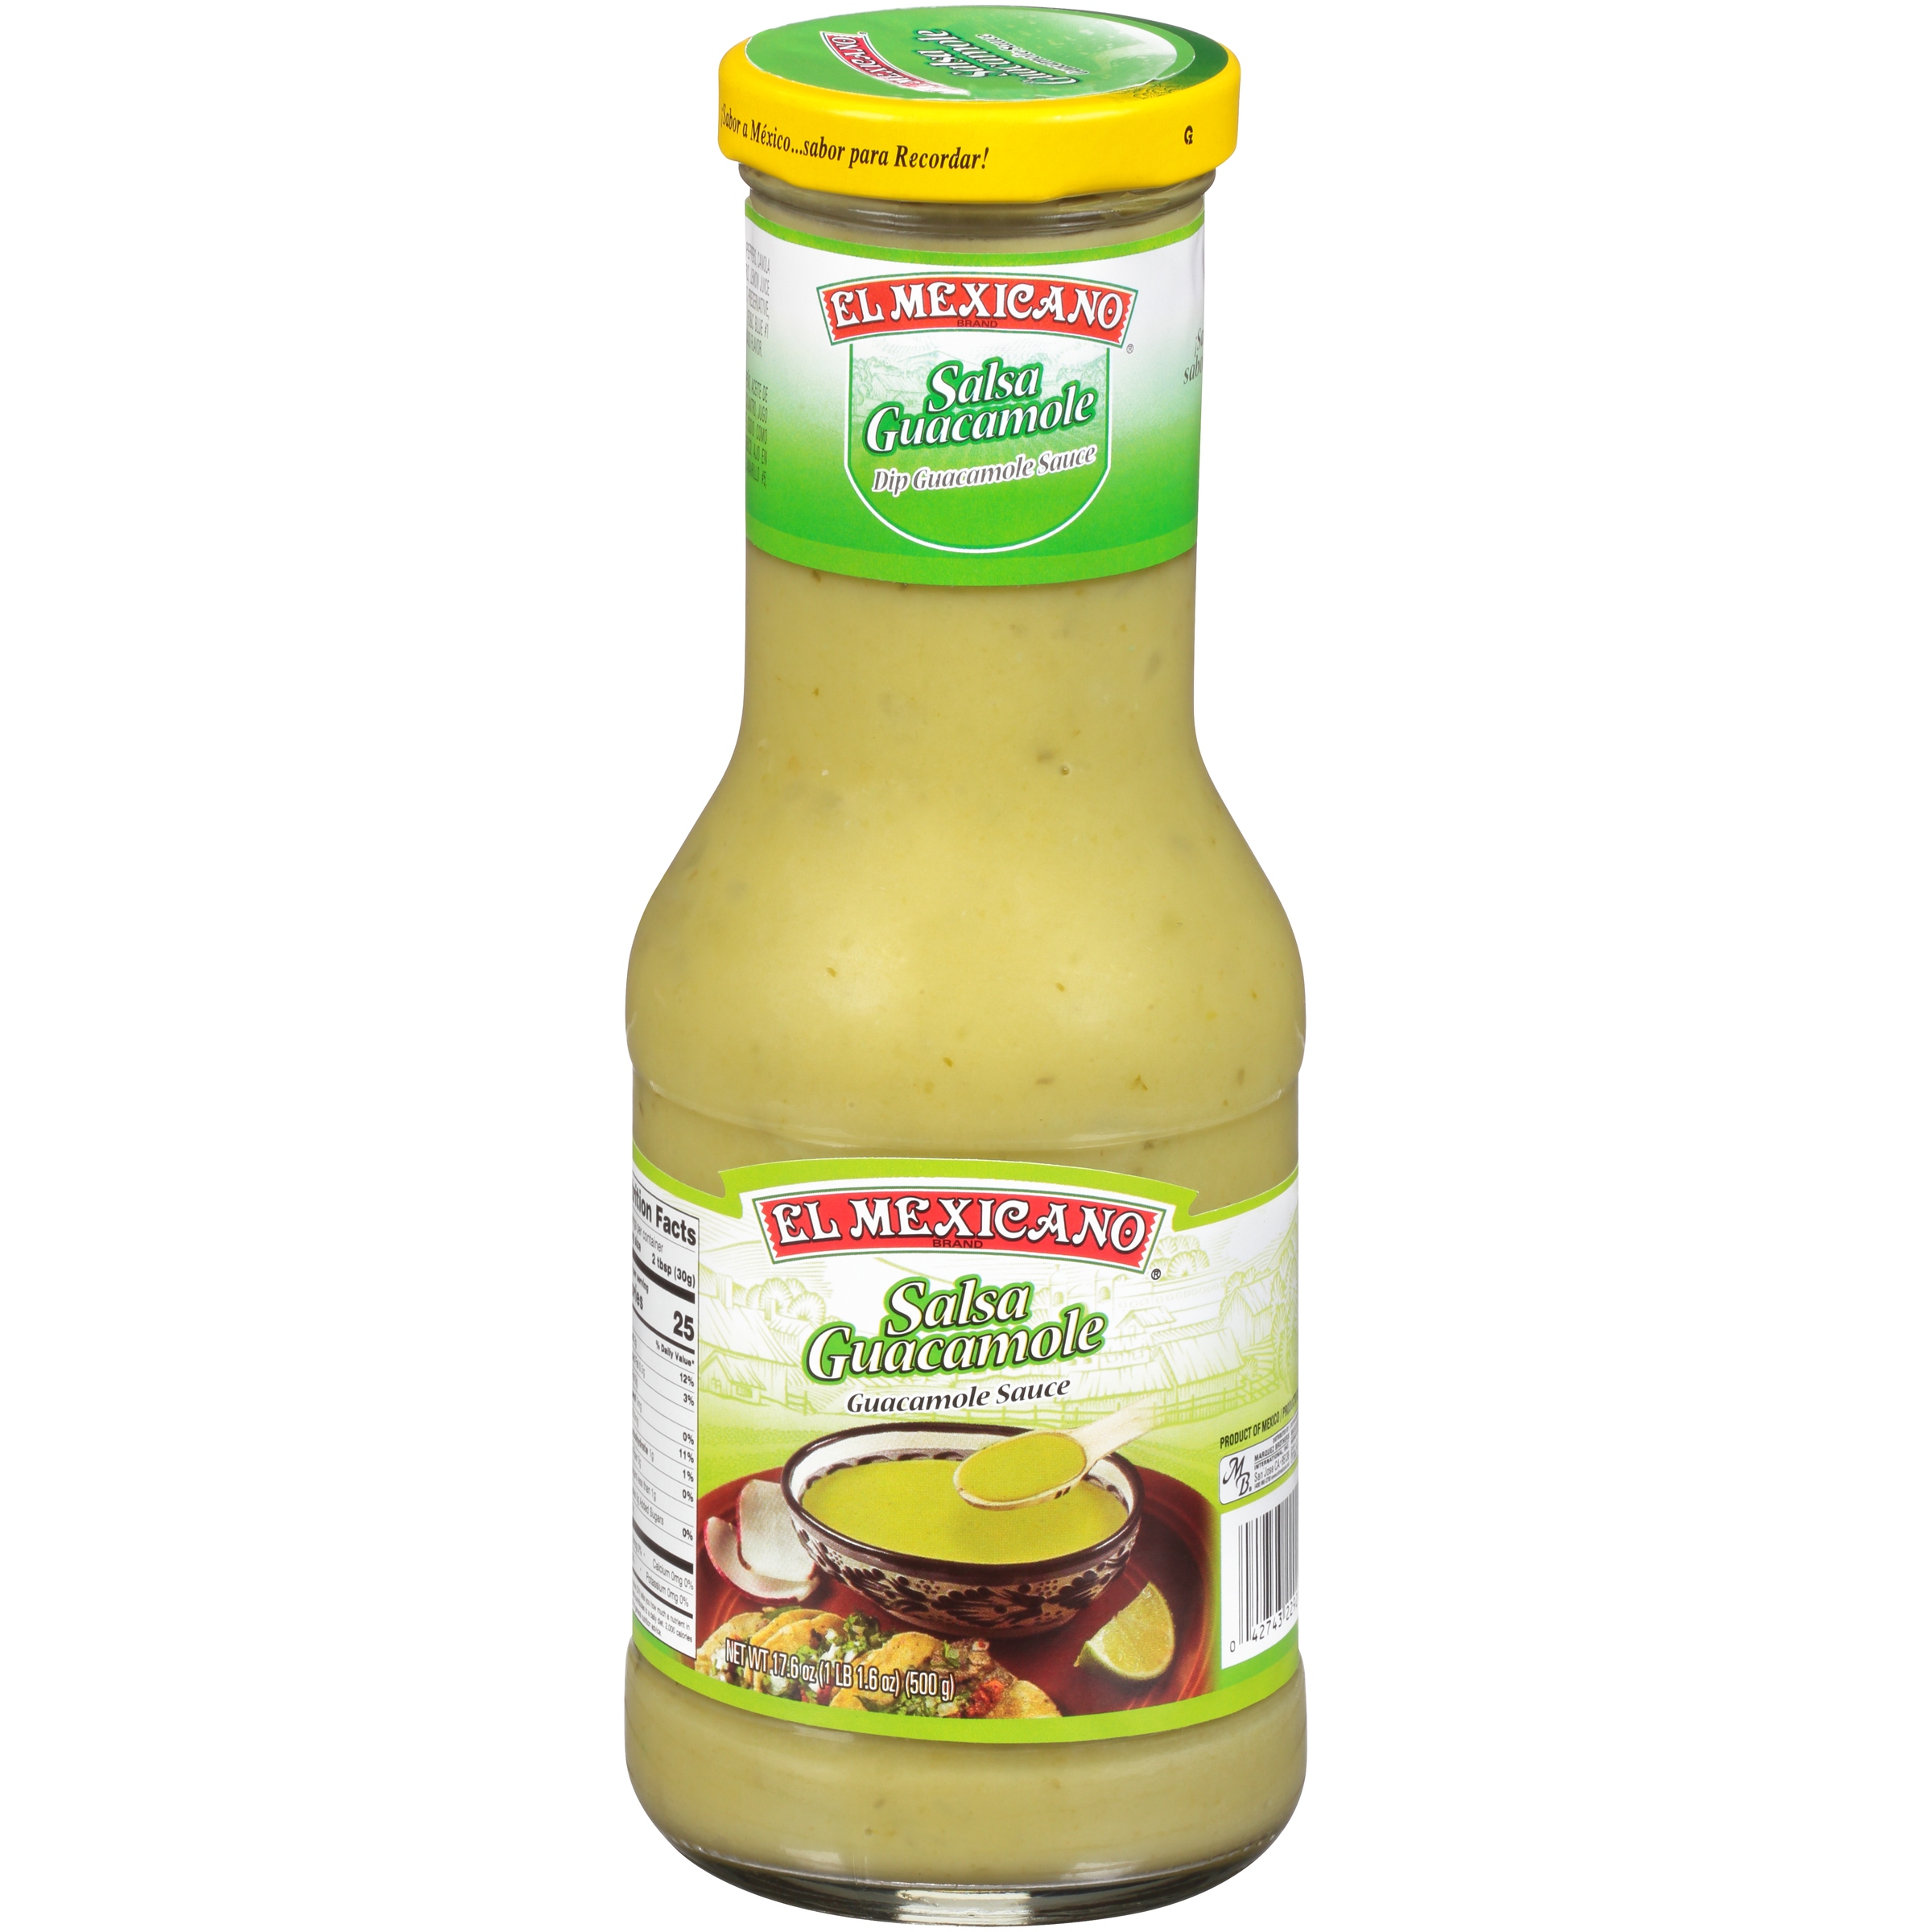 El Mexicano® Salsa Guacamole Sauce 17.6 oz. Bottle - image 1 of 6